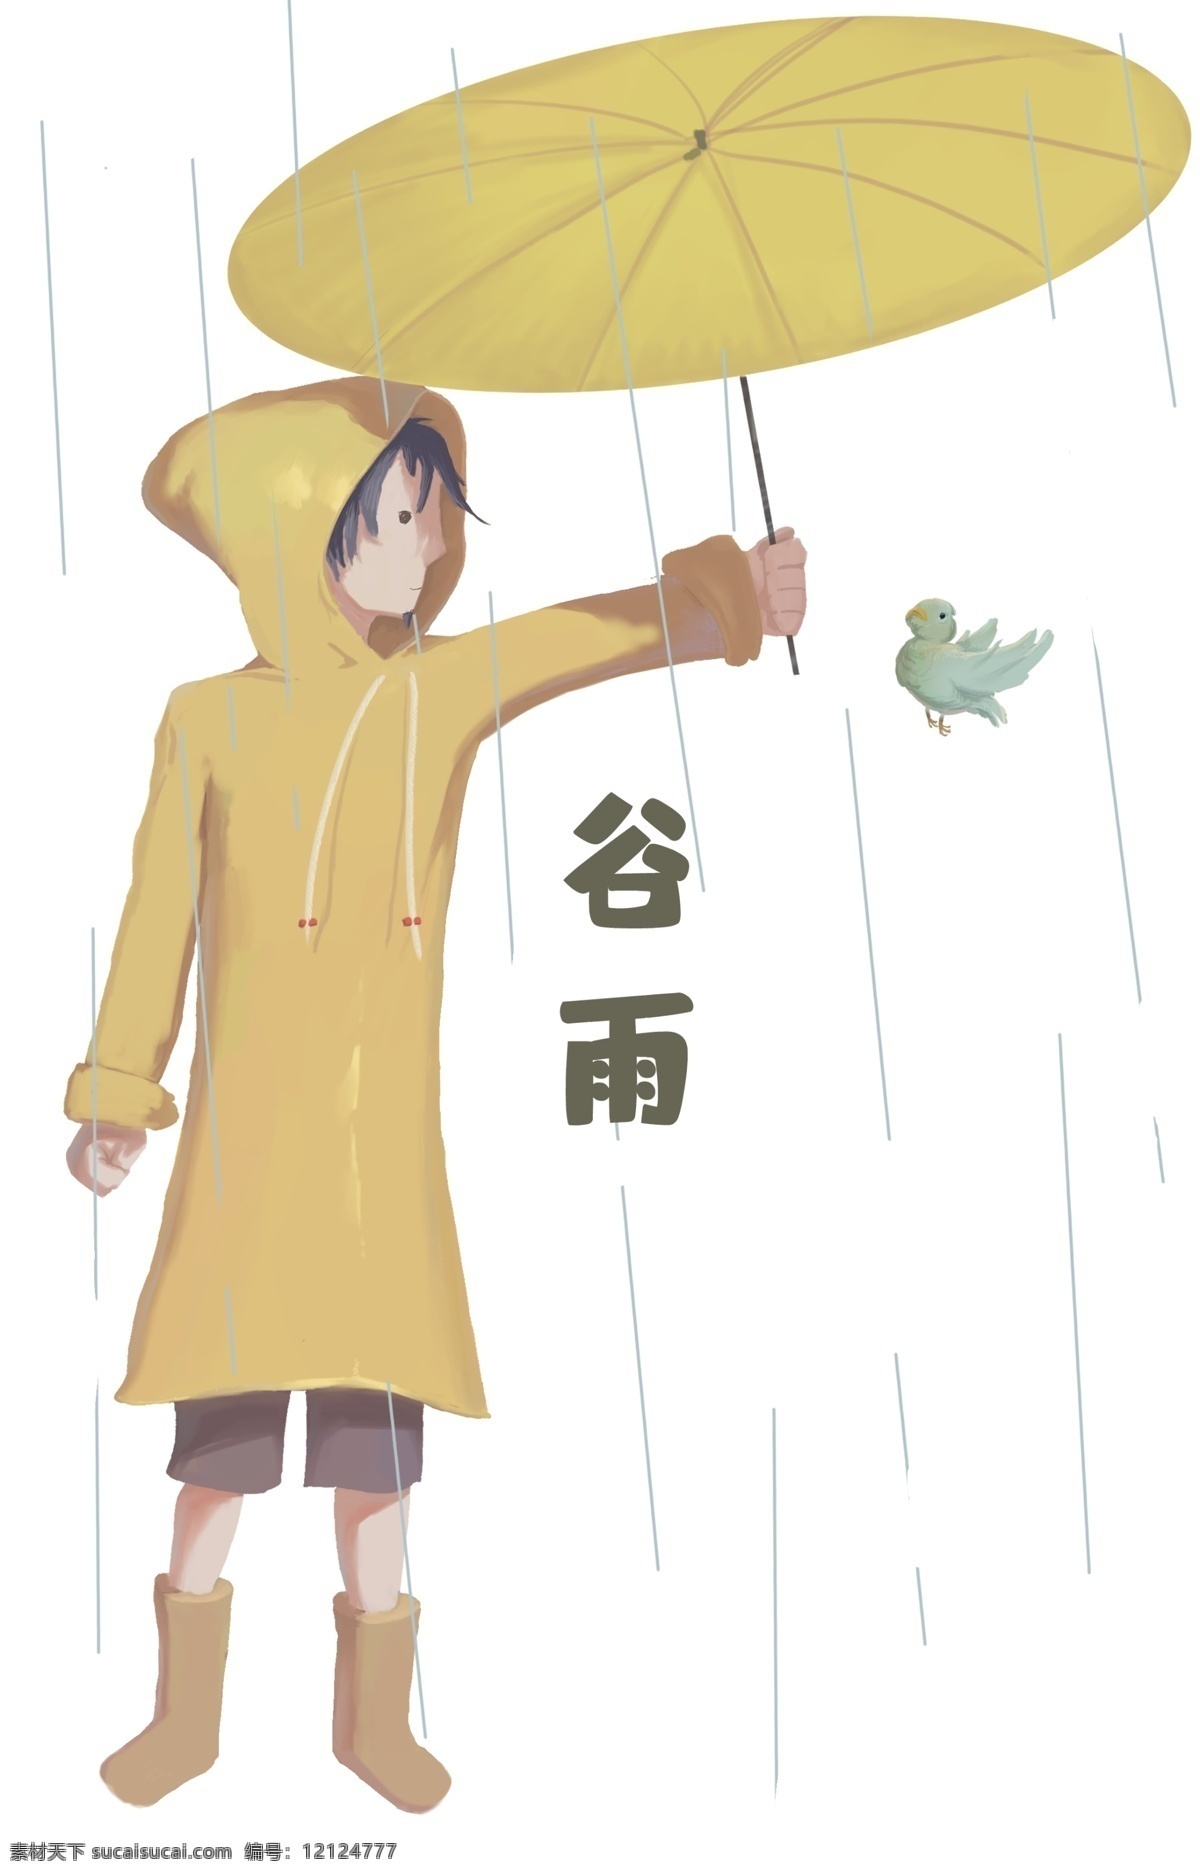 谷雨 小鸟 打伞 女孩 谷雨人物插画 黄色的雨伞 漂亮的小女孩 打伞的小女孩 白色的雨滴 蓝色的小鸟